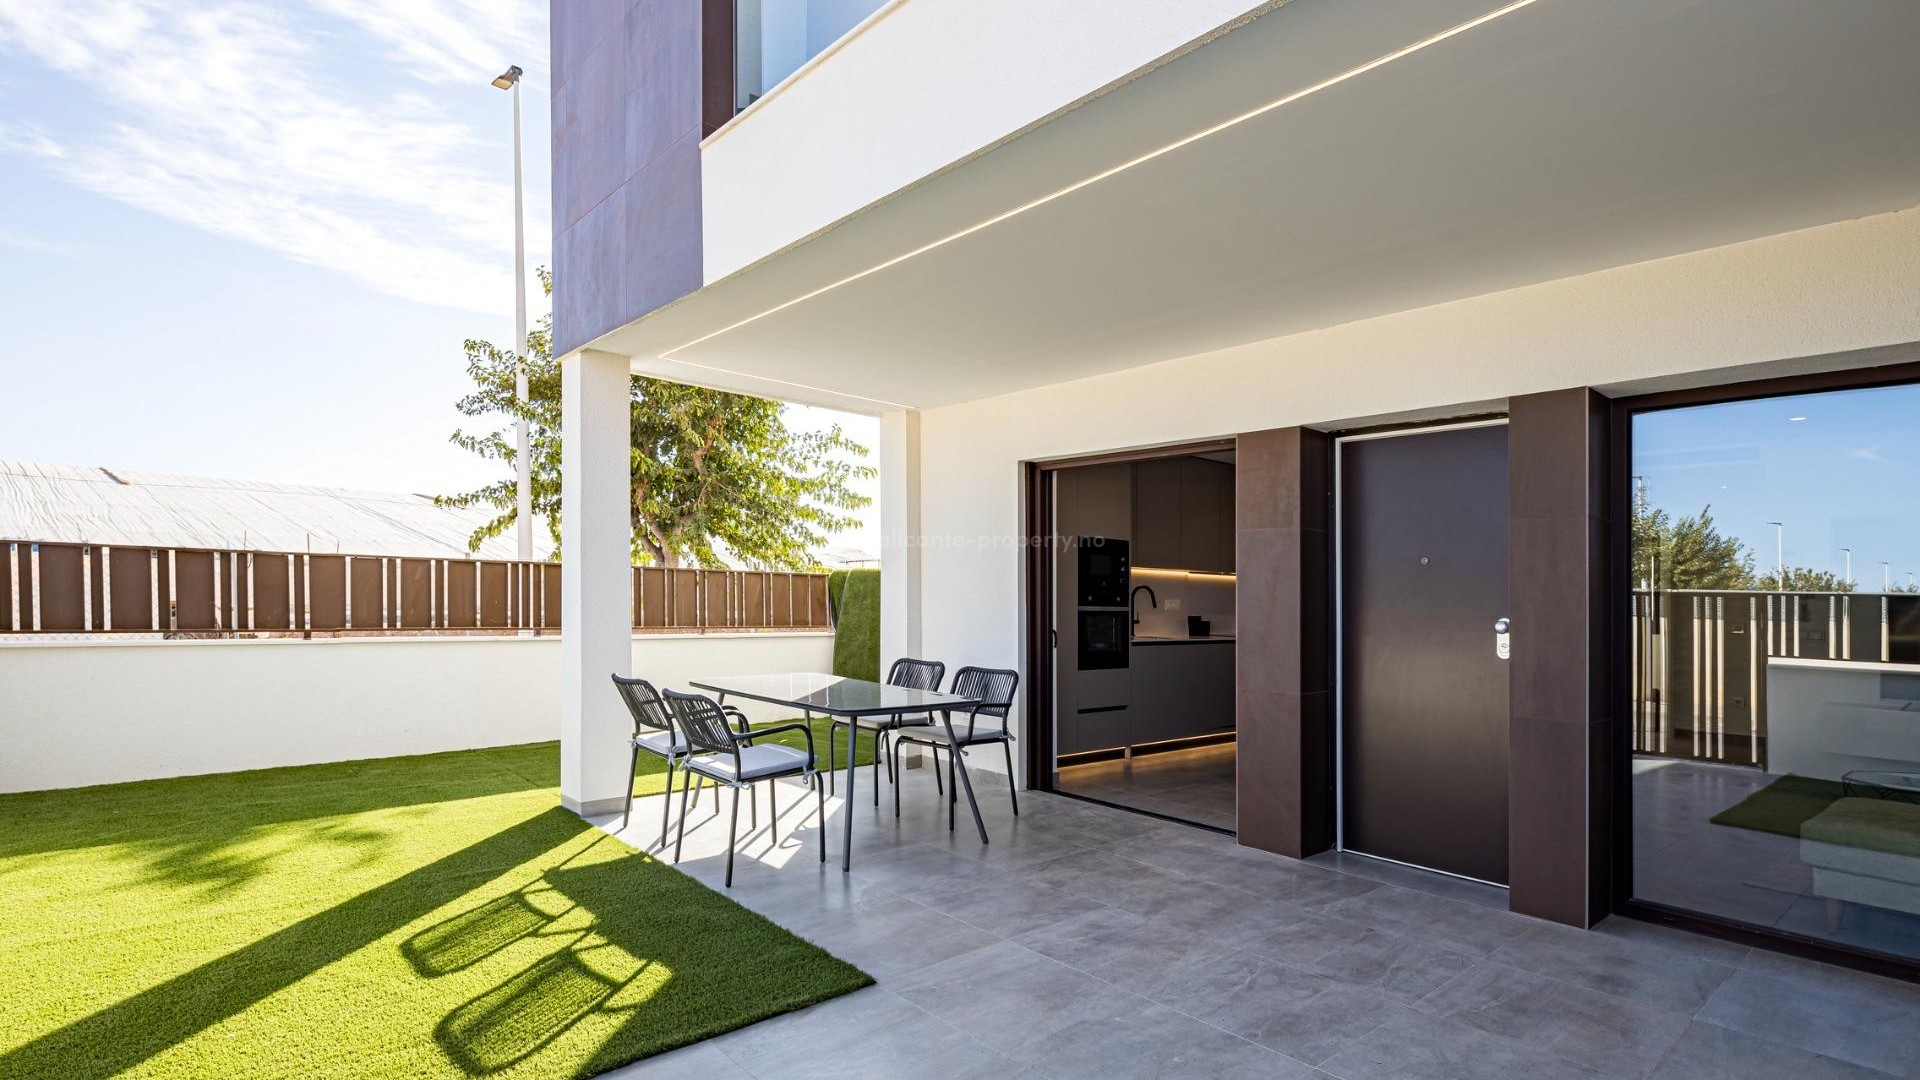 22 modern bungalow apartments in Pilar de La Horadada, 2 bedrooms, 2 bathrooms, large garden ground floor, terrace/solarium on the top floor, communal pool